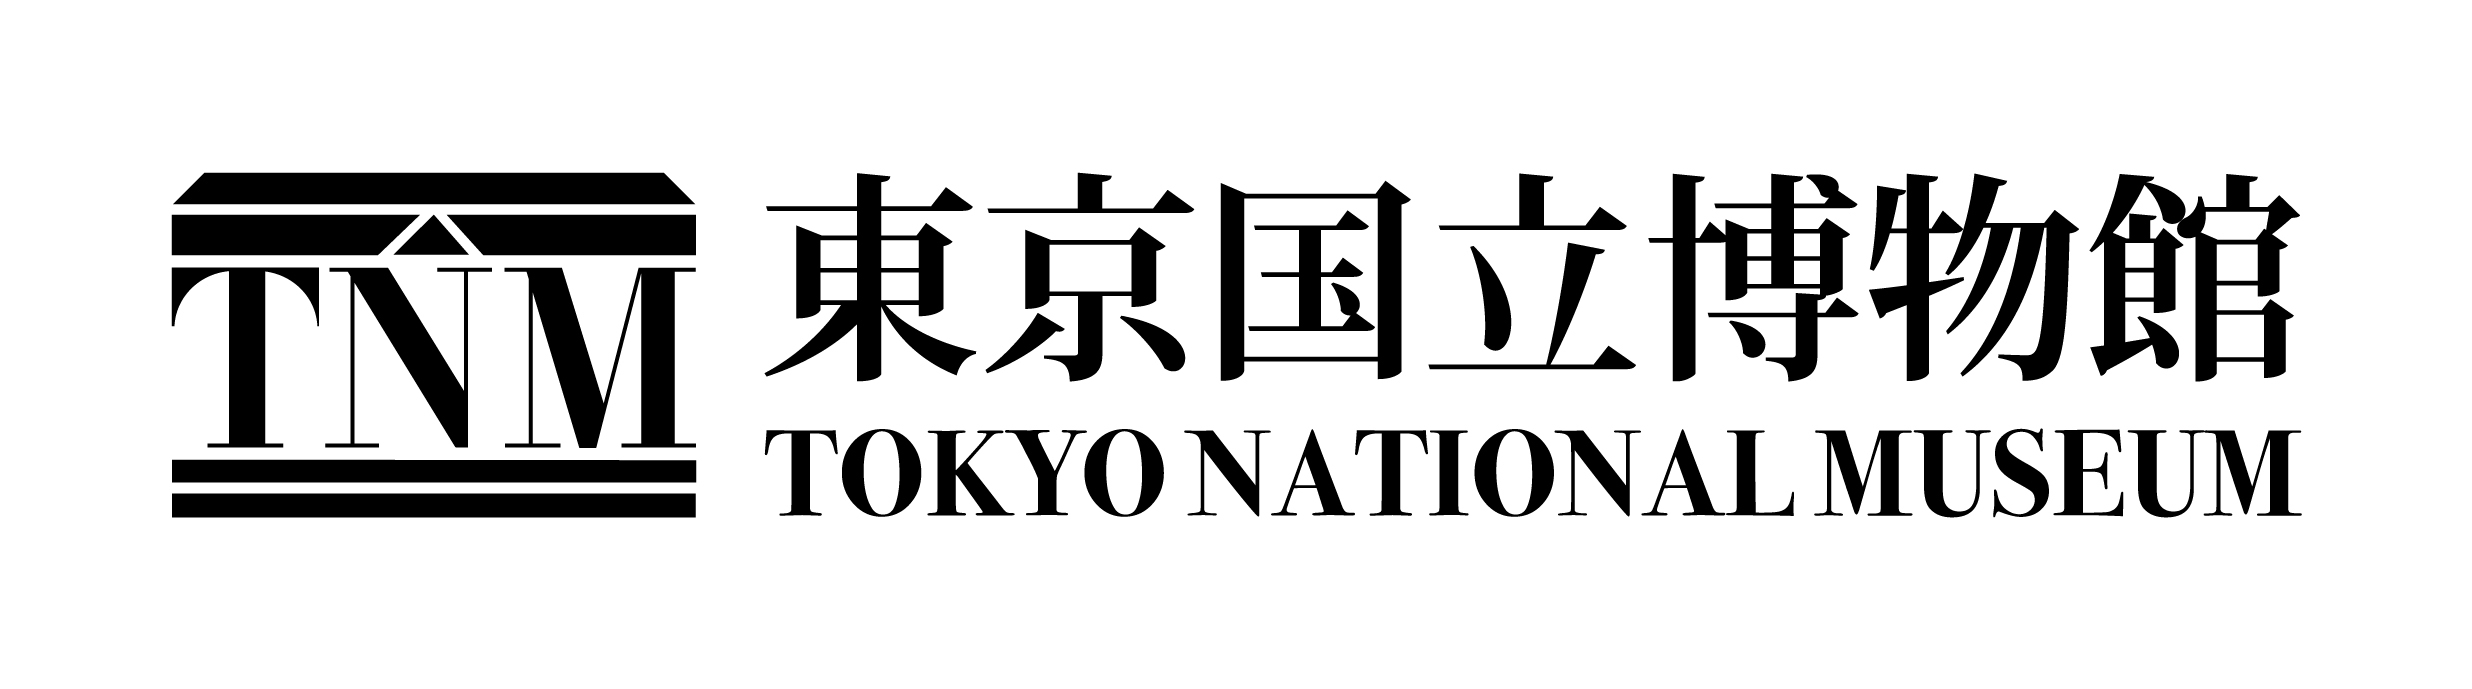 夏休みはトーハクでサムライ気分 日本のよろい を7 17 水 から開催 東京国立博物館のプレスリリース